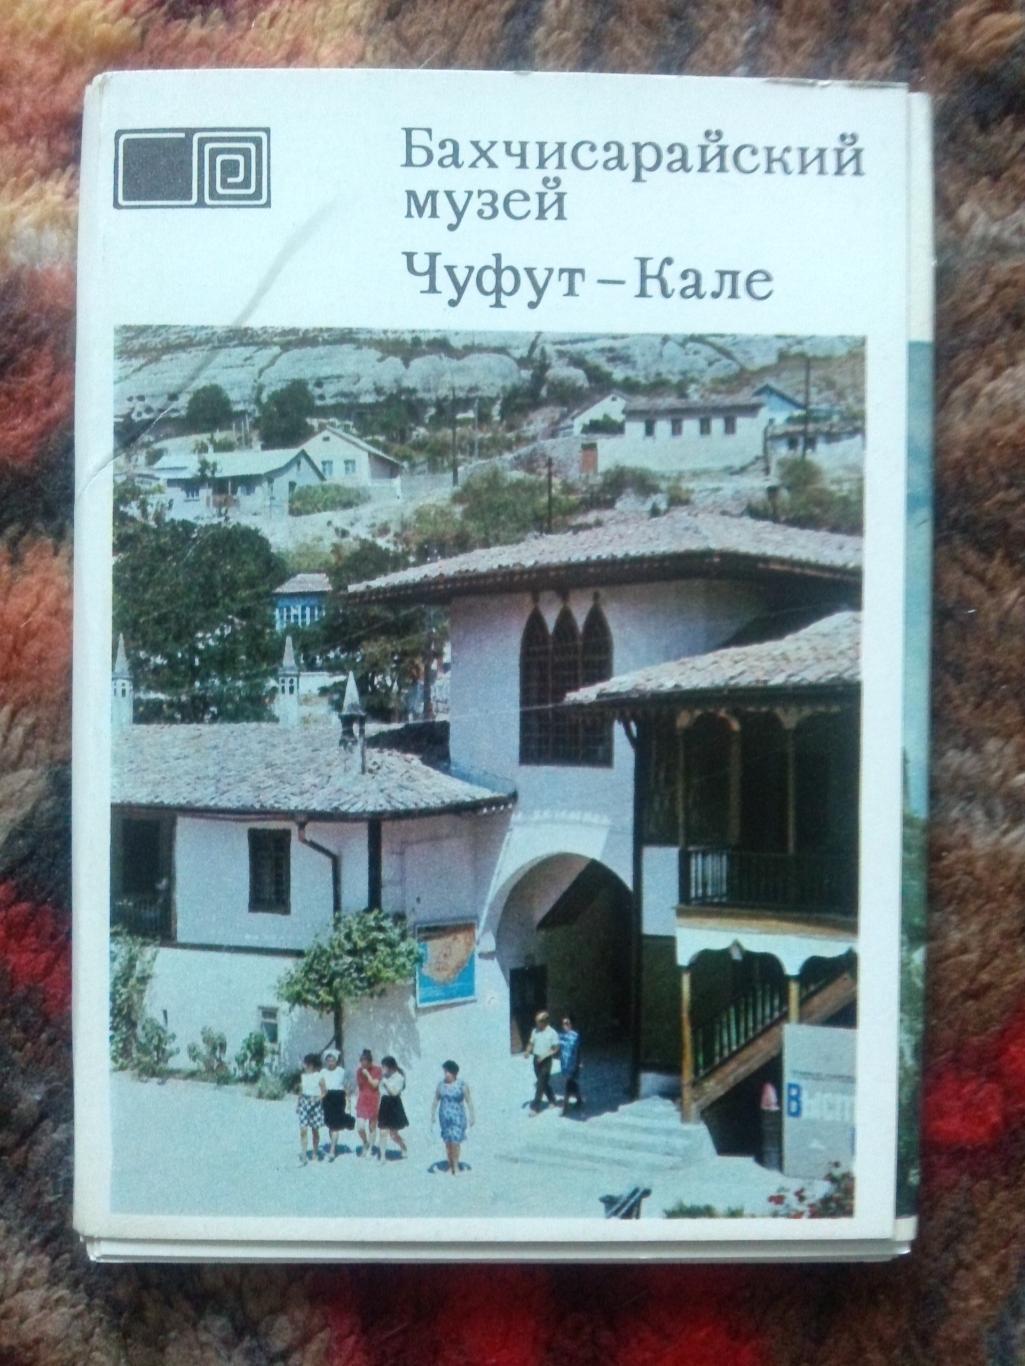 Города СССР : Бахчисарайский музей Чуфут-Кале 1973 г. полный набор-21 открытка